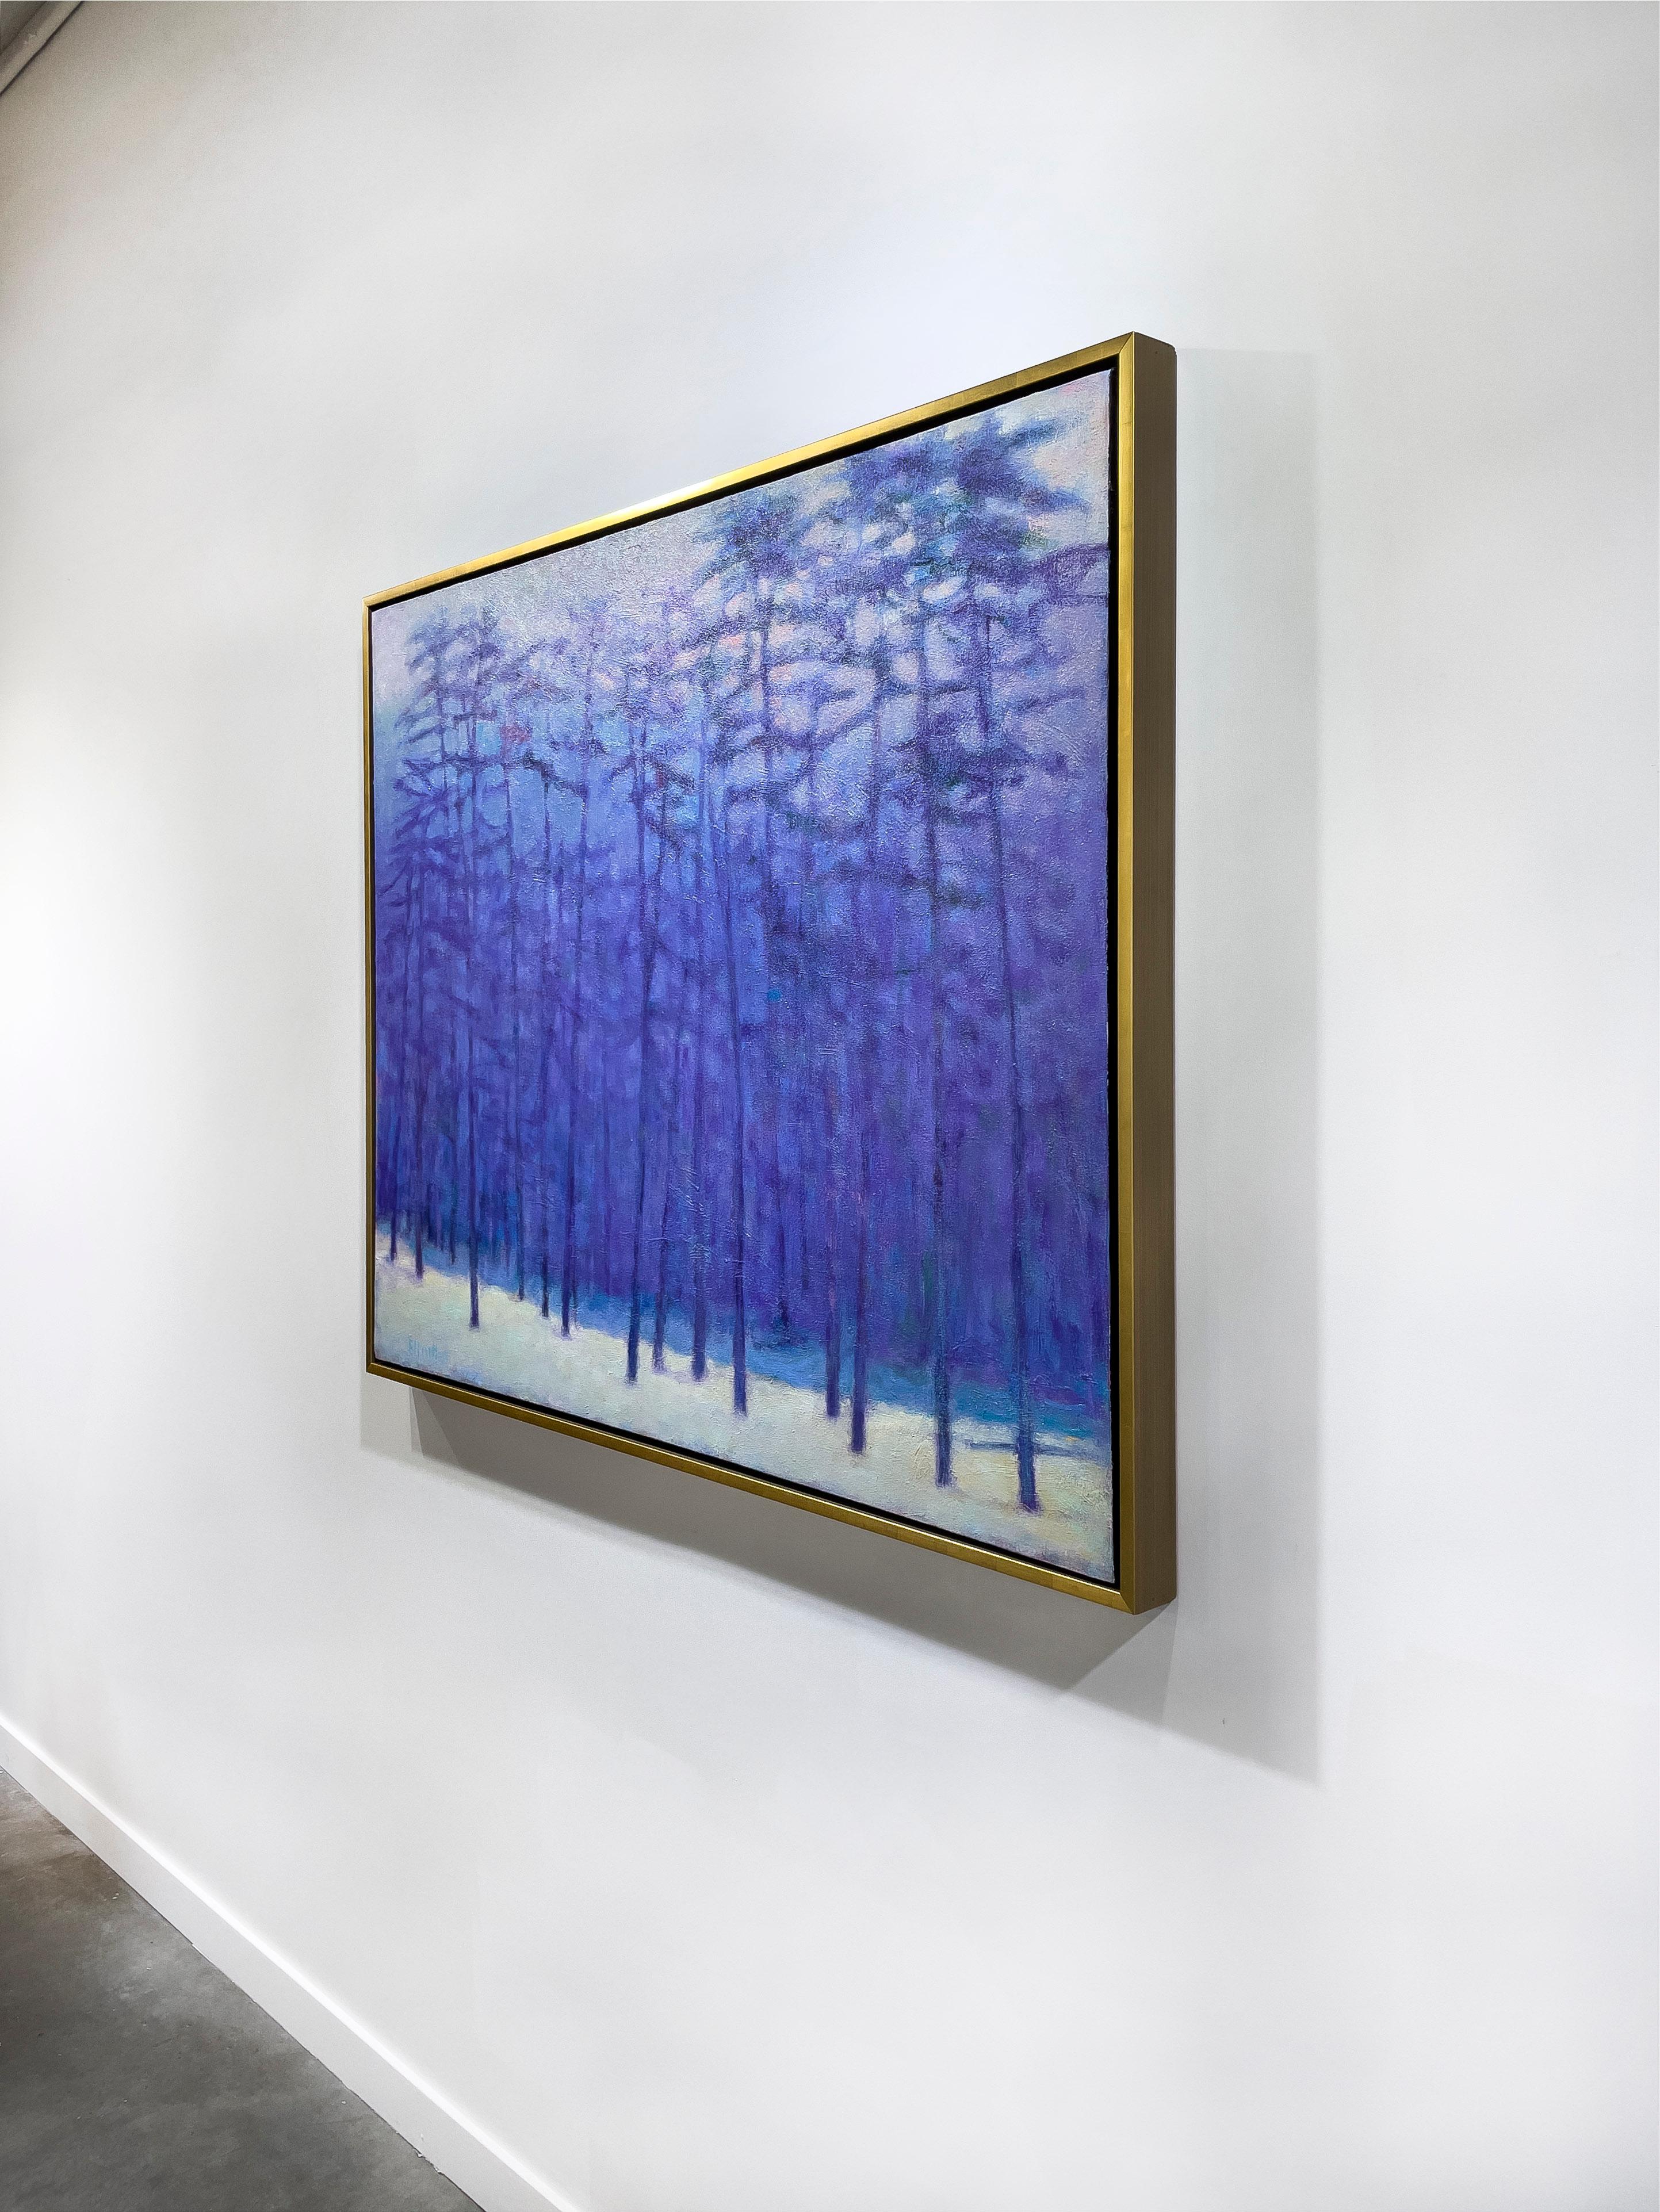 Ce paysage abstrait contemporain de Ken Elliotts est réalisé avec de la peinture à l'huile sur toile. Il se caractérise par une palette bleue-violette froide, capturant une scène abstraite d'une forêt en hiver. Les arbres sont représentés dans des